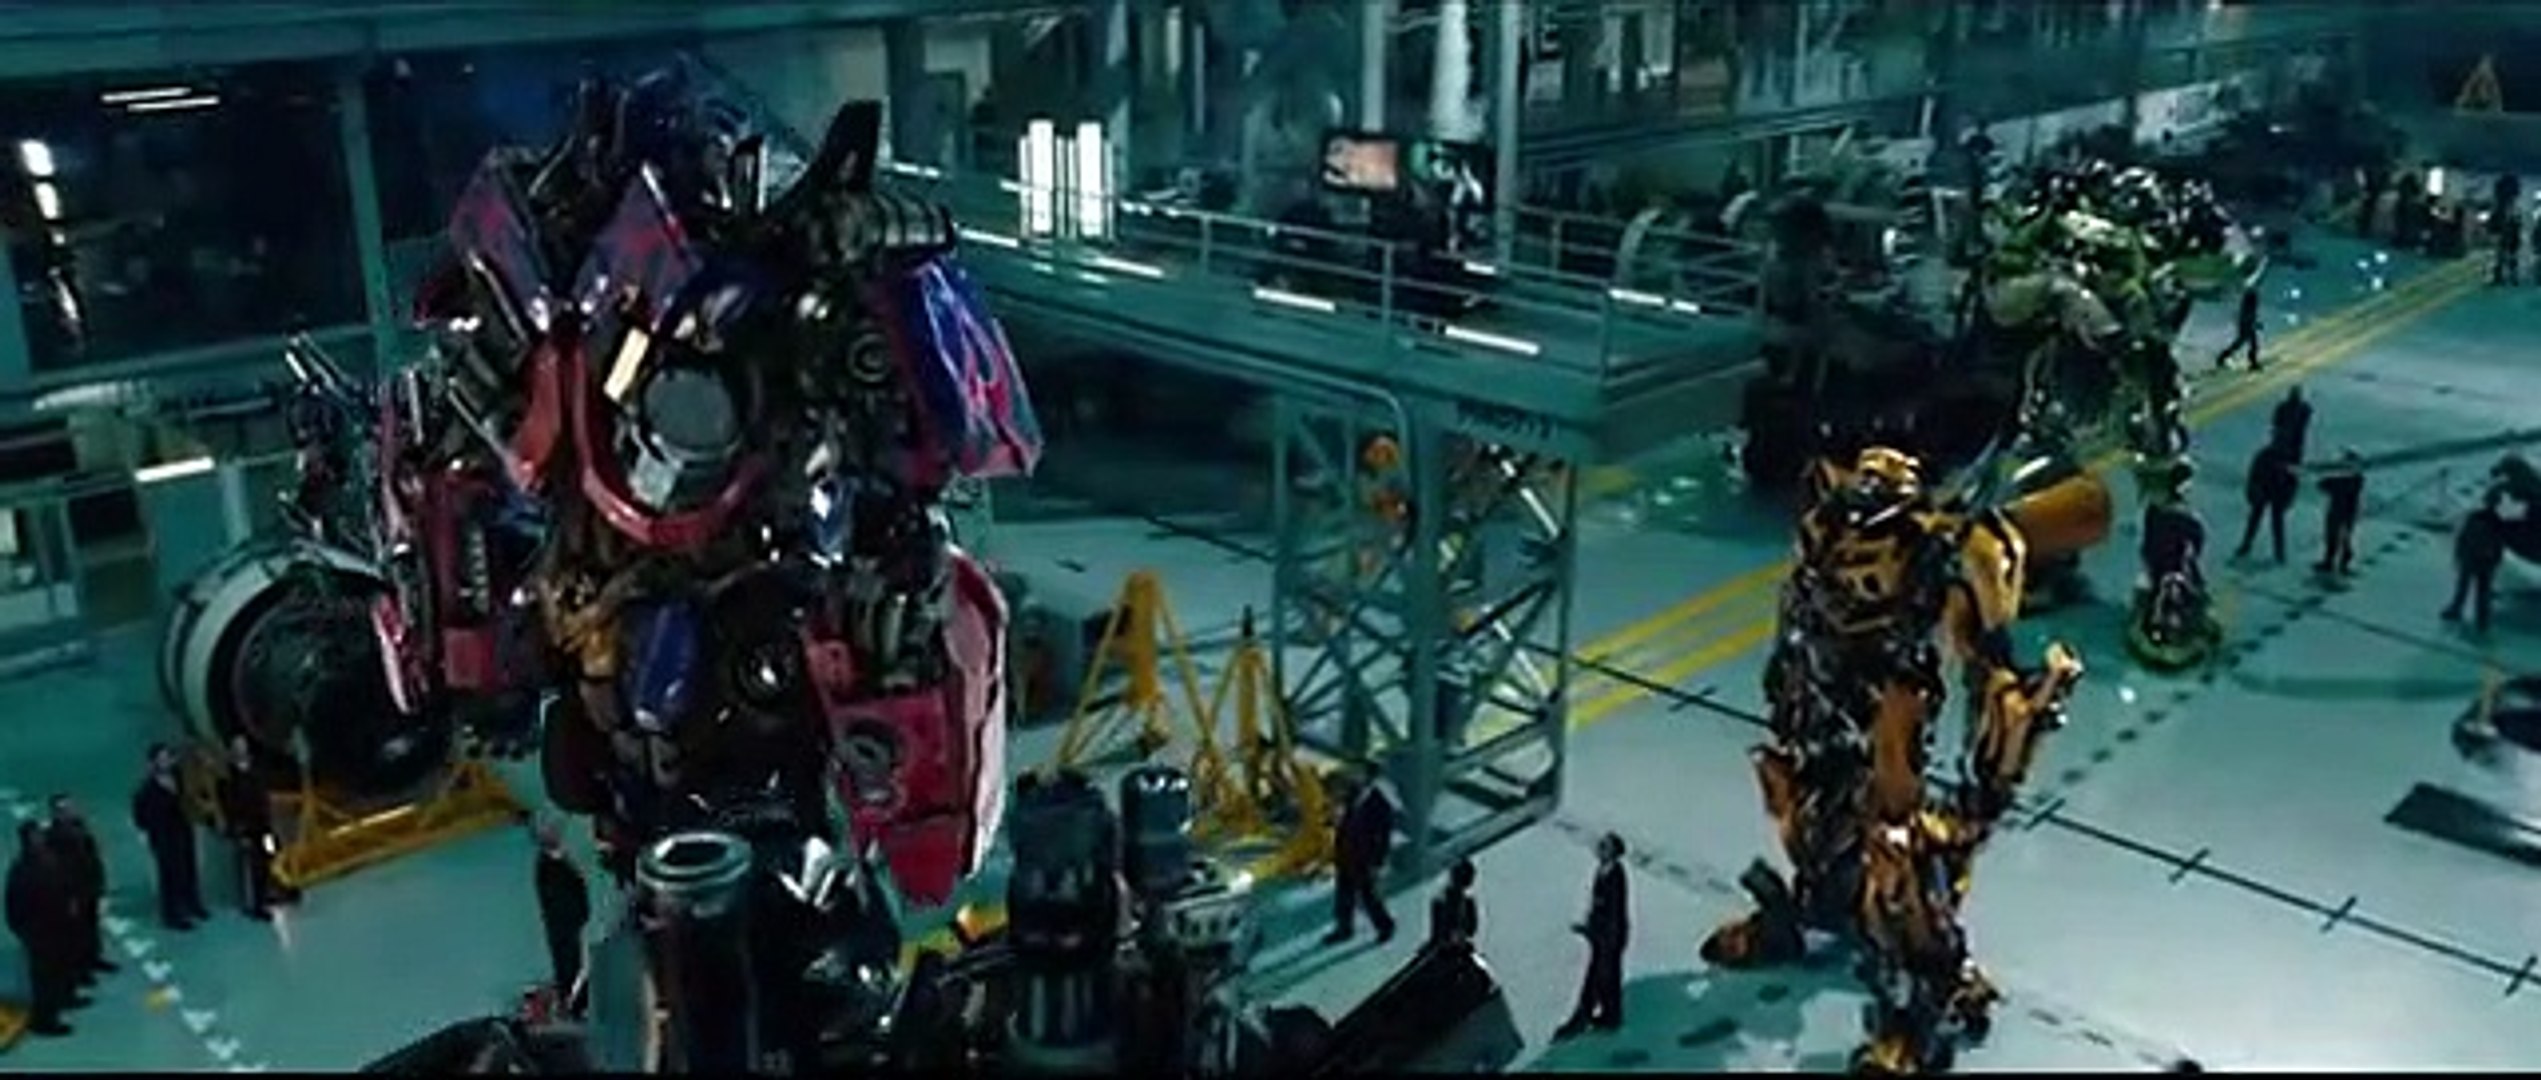 Transformers 3 - O Lado Oculto da Lua - Trailer Dublado - Vídeo Dailymotion